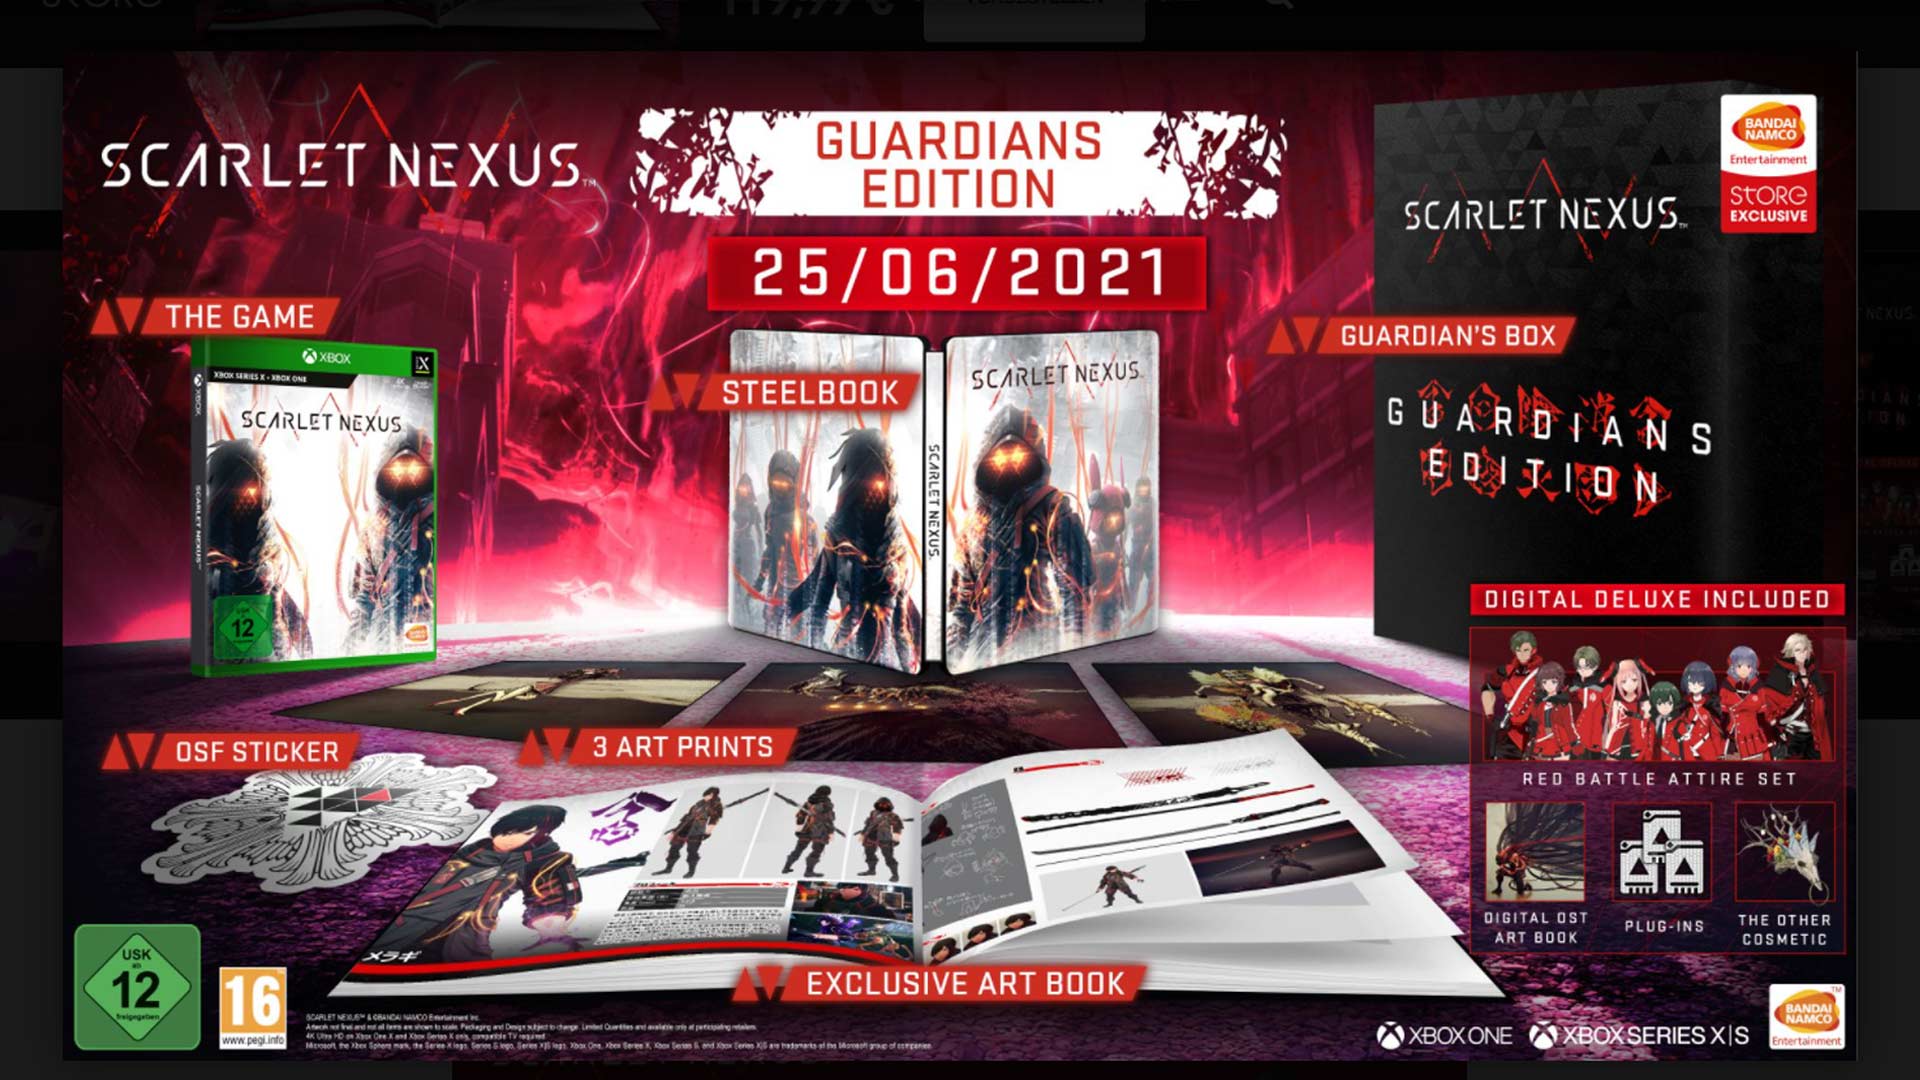 Scarlet Nexus - Guardians Edition